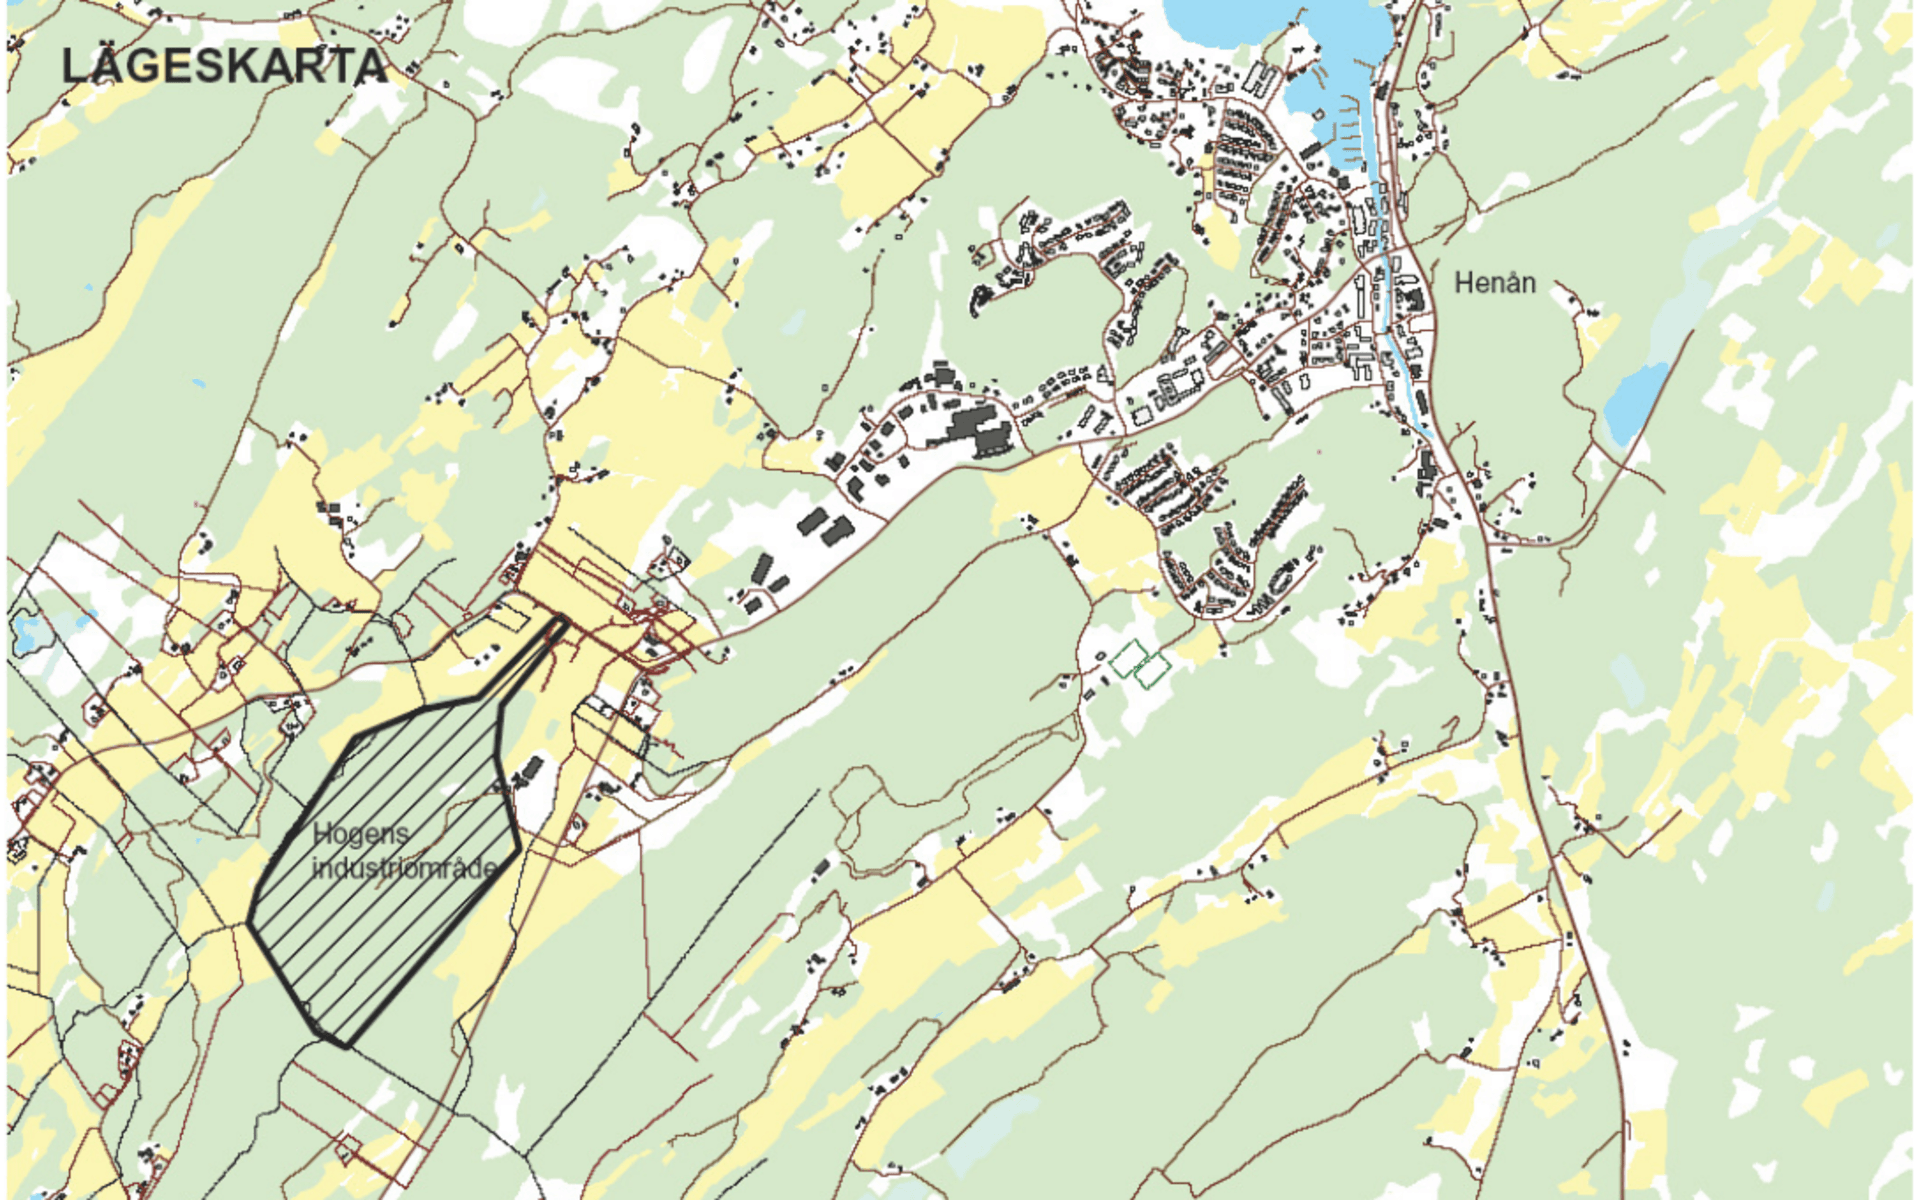 Hogens blivande industriområde ligger en bit väster ut från Henåns centrum. 